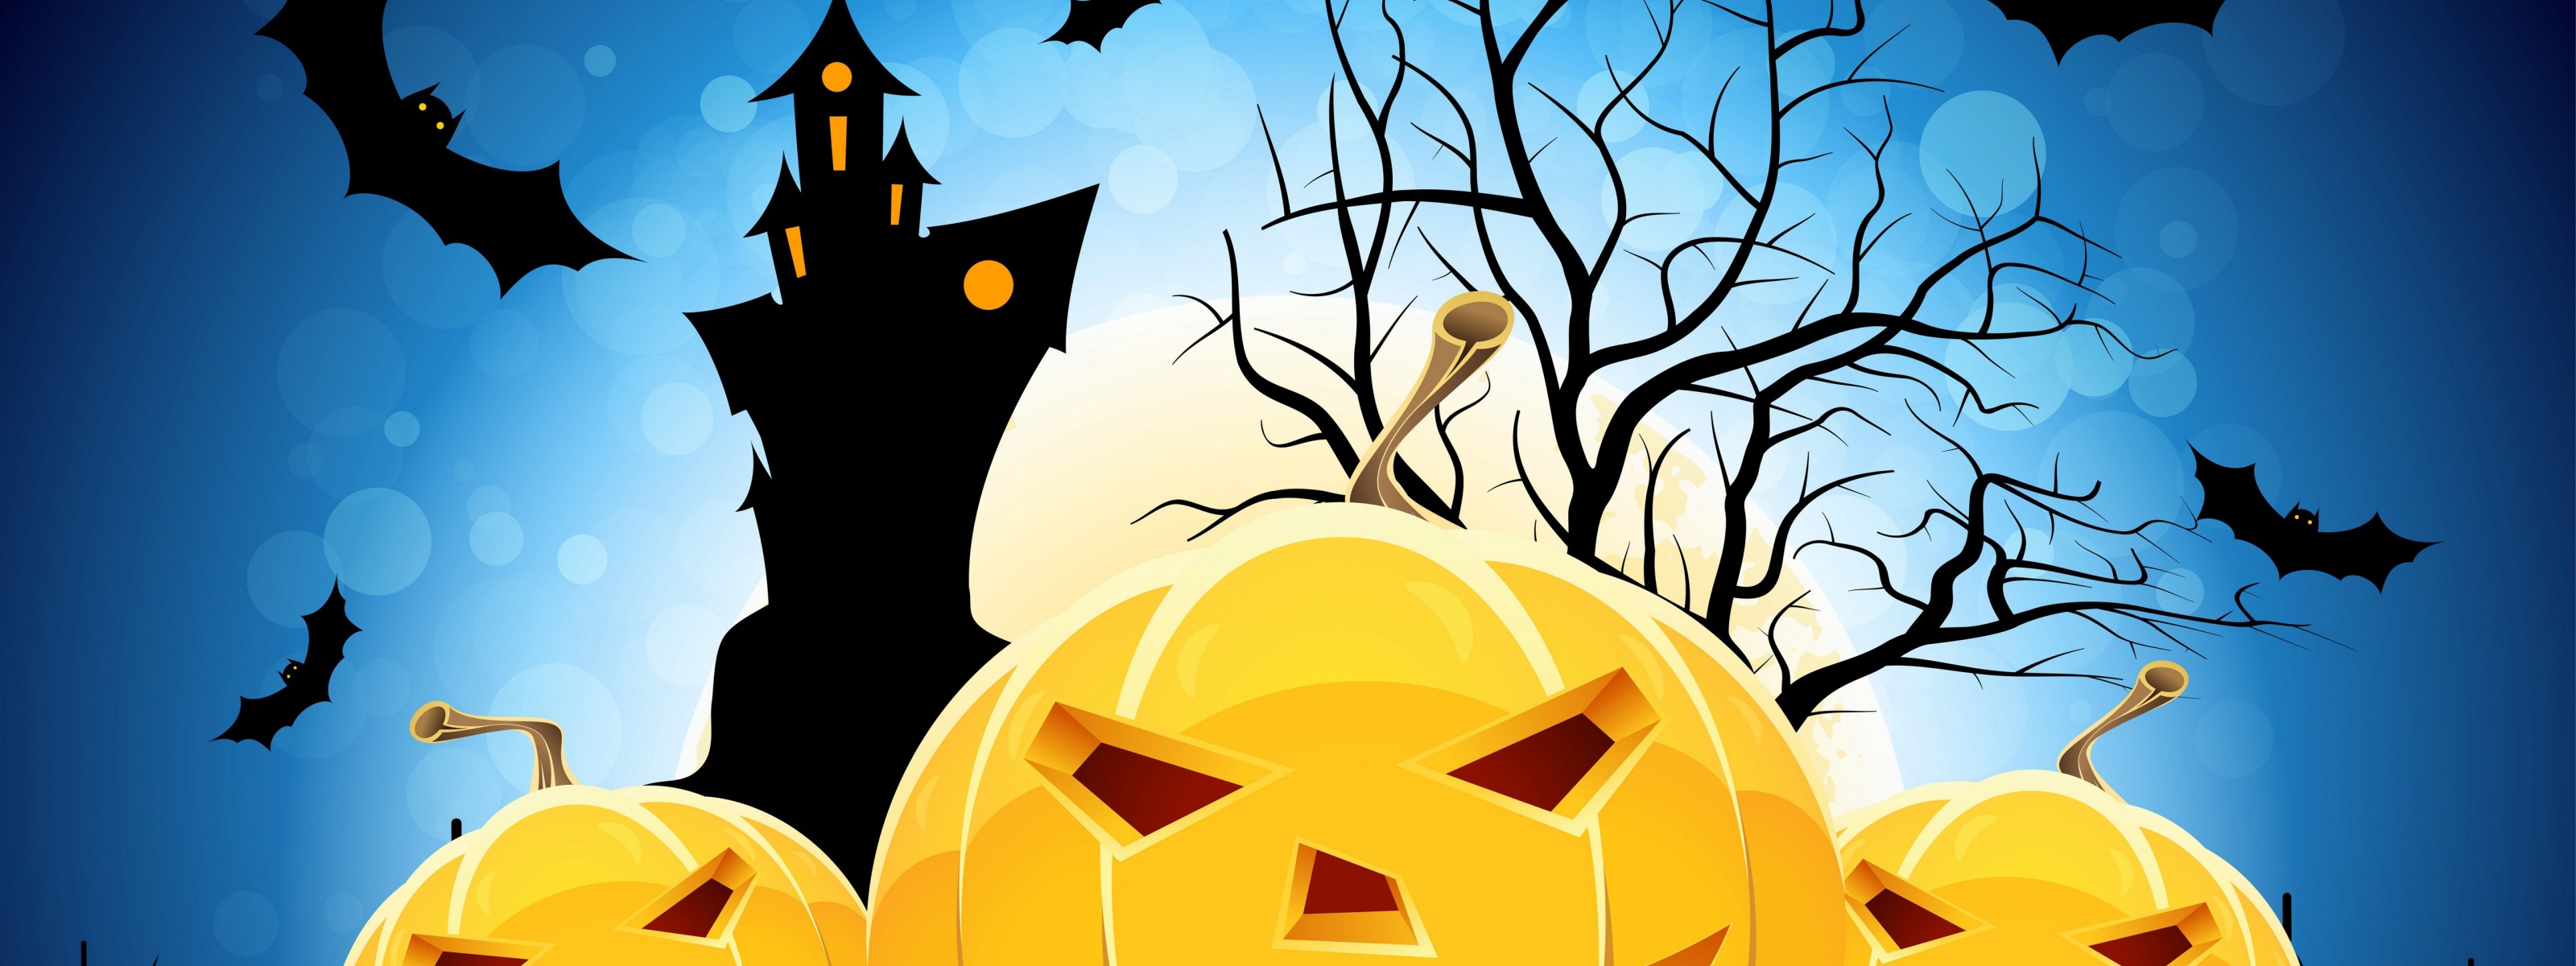 Halloween Pumpkins Bats And Castle